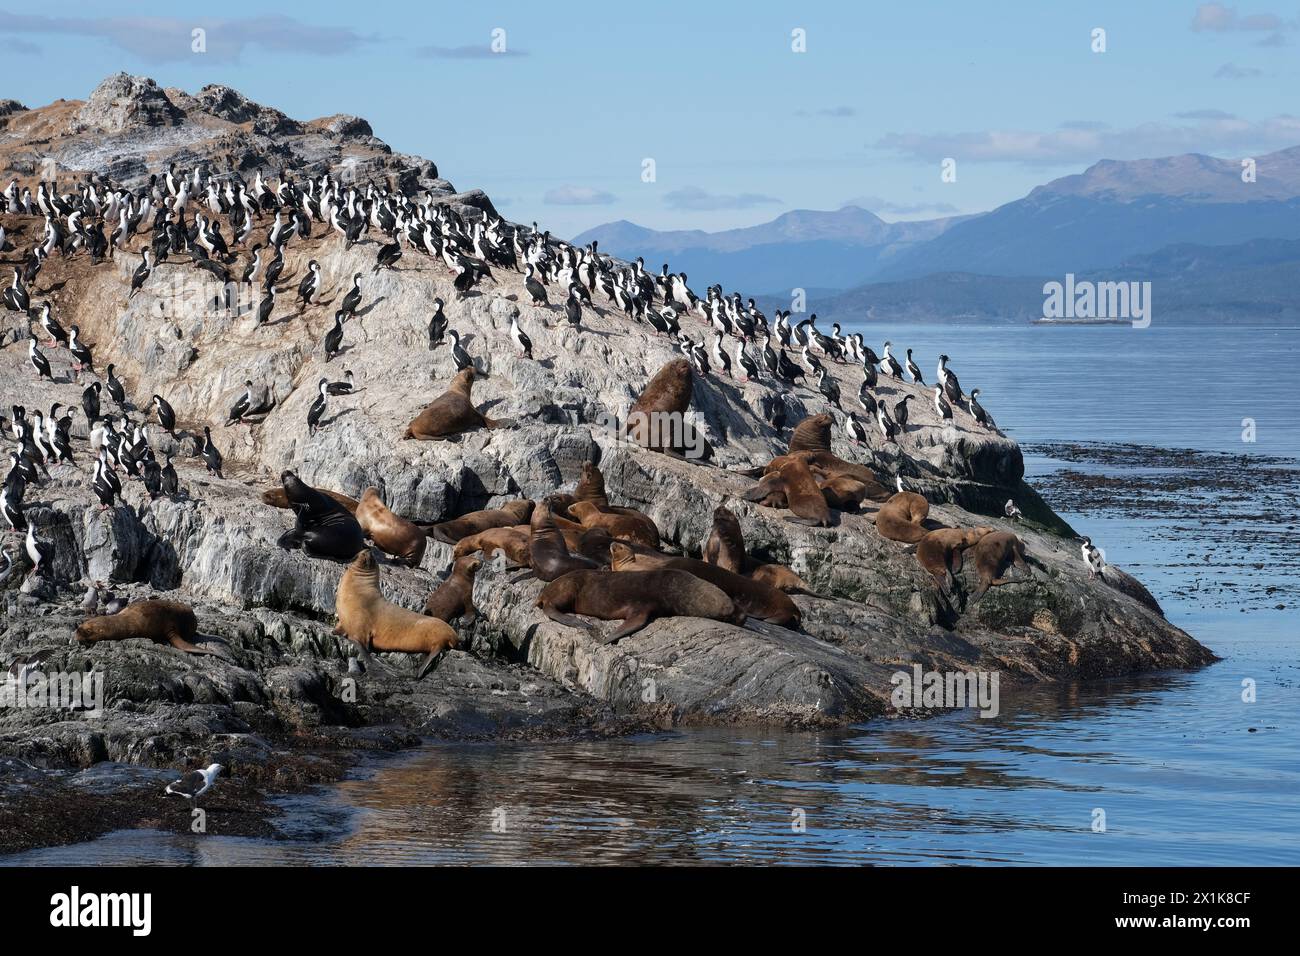 Ushuaia, Tierra del Fuego, Argentinien - Kormorane und Seelöwen thronen auf einem Felsen im Beagle Channel. Der Beagle Channel ist ein natürlicher Wasserweg am Beagle Channel Stockfoto